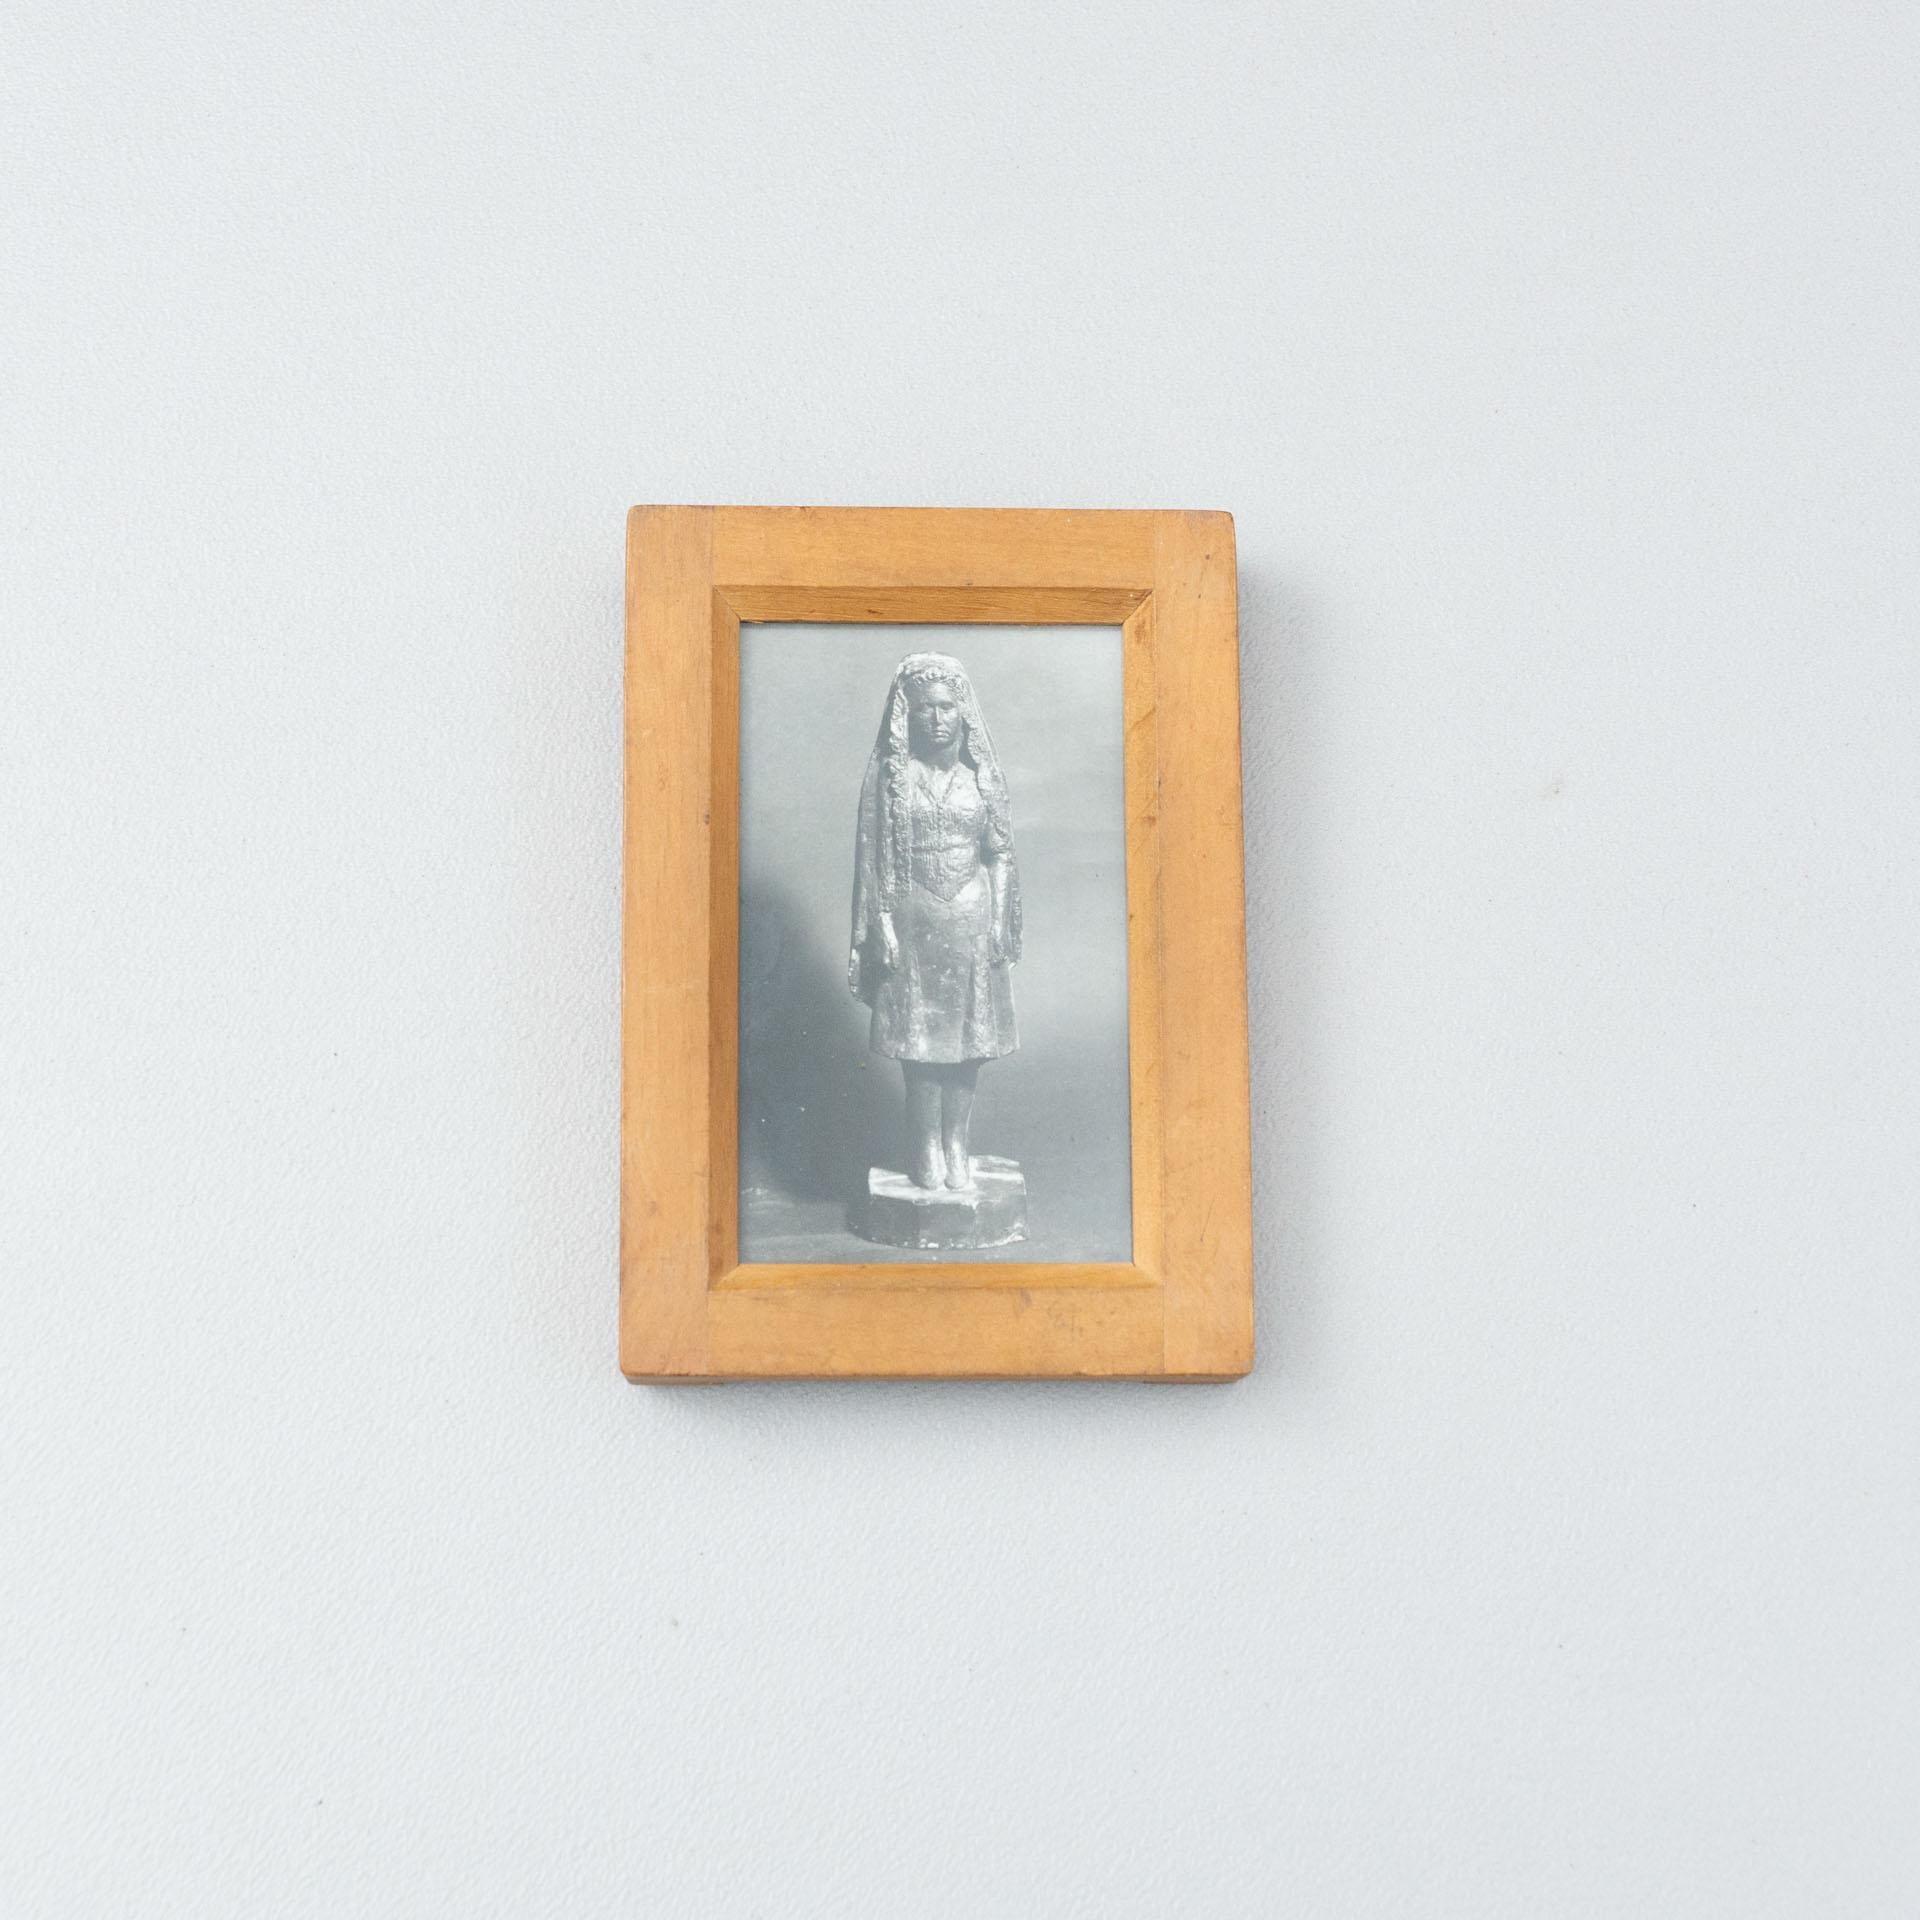 Manolo Hugués Archivfotografie von Skulpturen.
Gedruckt, um 1960.
Inklusive Holzrahmen.


Materialien:
Gelatinesilber-Bromiddruck

Abmessungen:
T 2 cm x B 10,6 cm x H 15 cm

Wir bieten kostenlosen weltweiten Versand für dieses Stück.